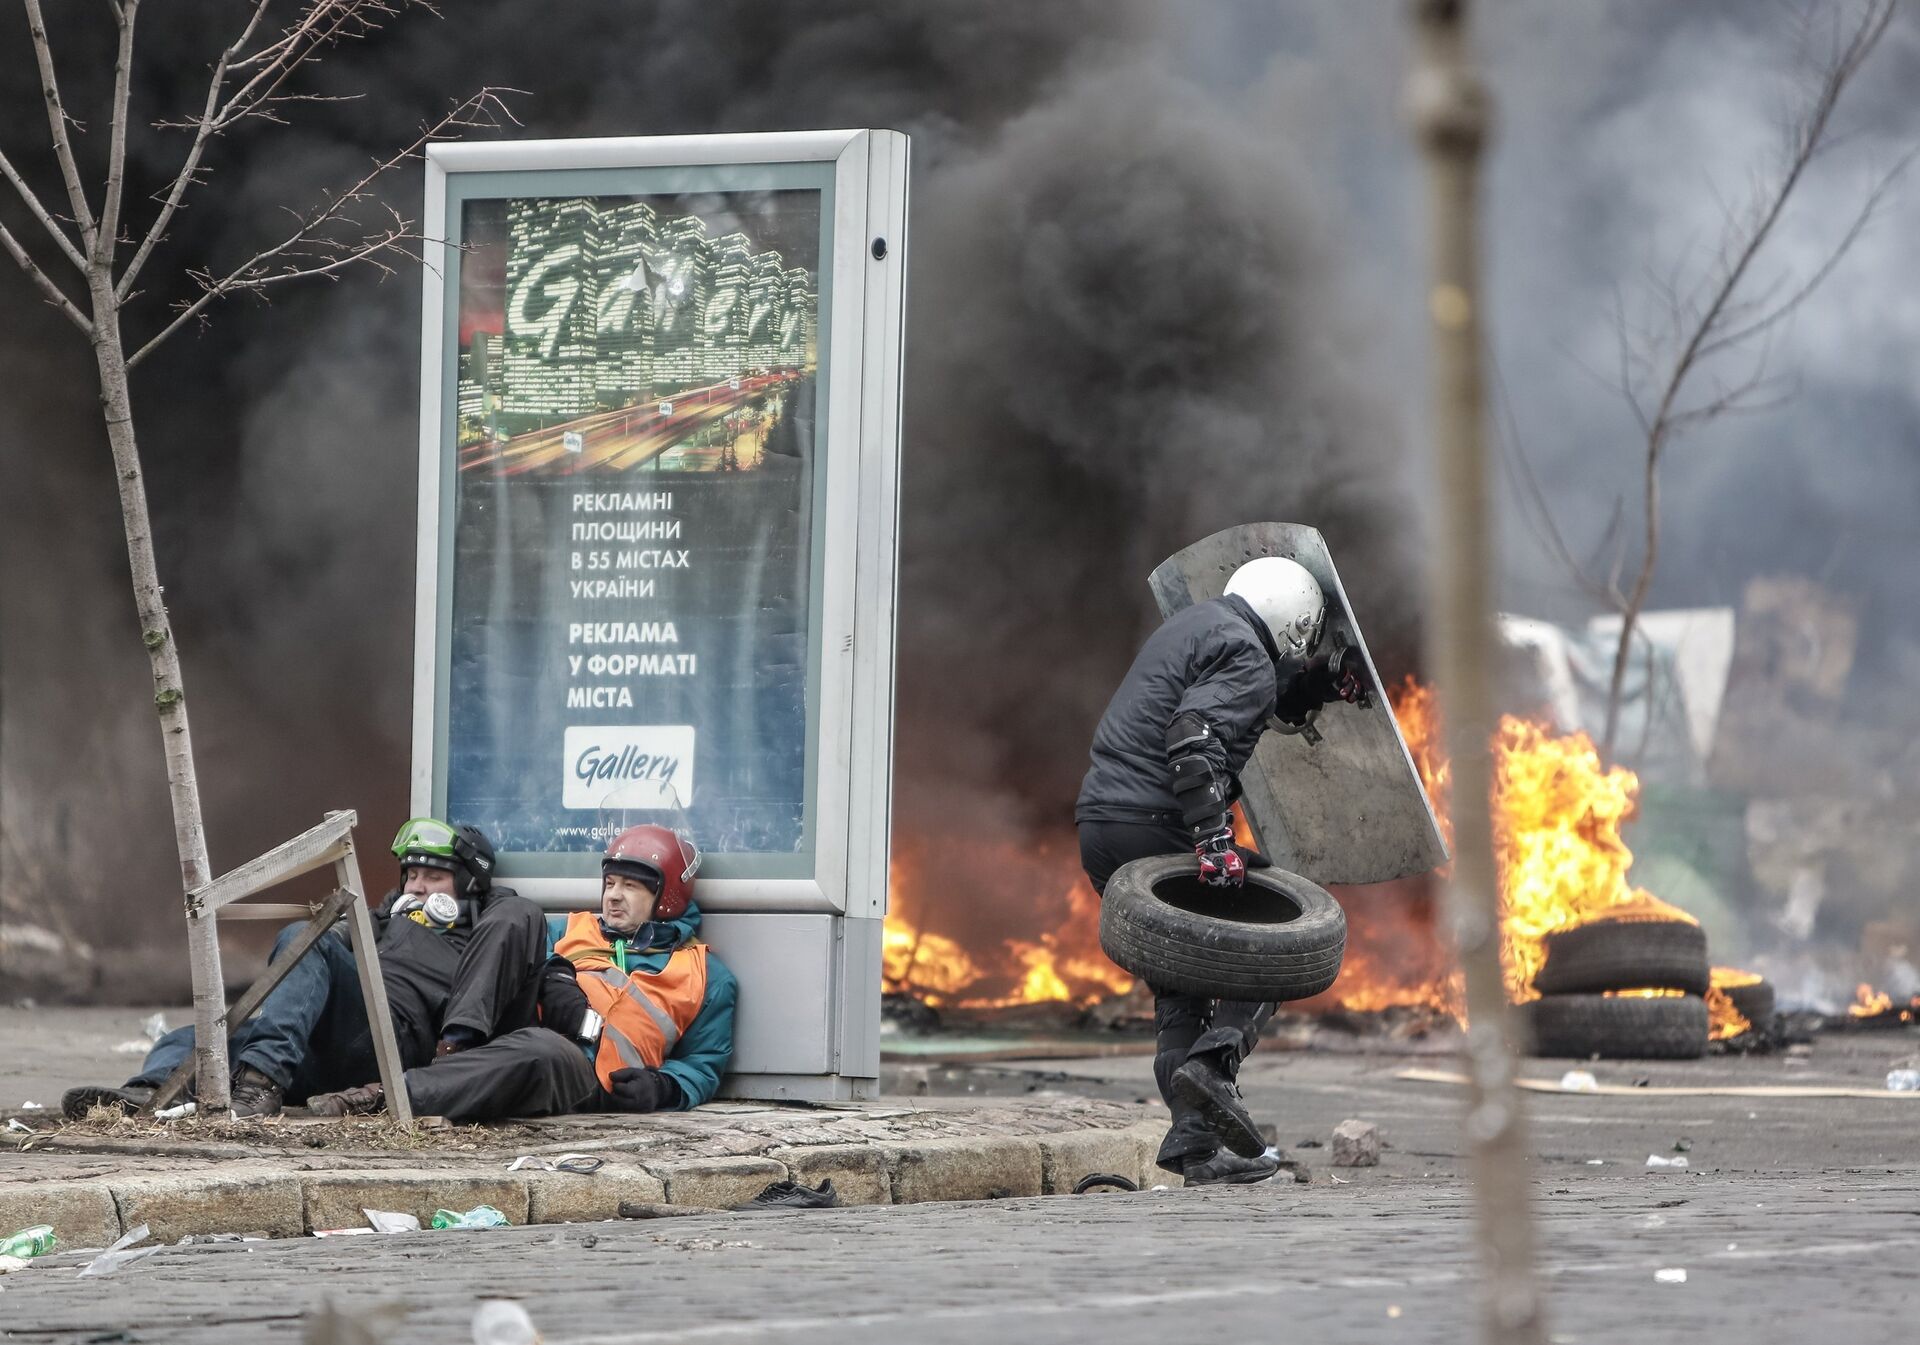 Сторонники оппозиции во время столкновений на улице Институской в Киеве, 20 февраля 2014 года - Sputnik Азербайджан, 1920, 21.02.2024